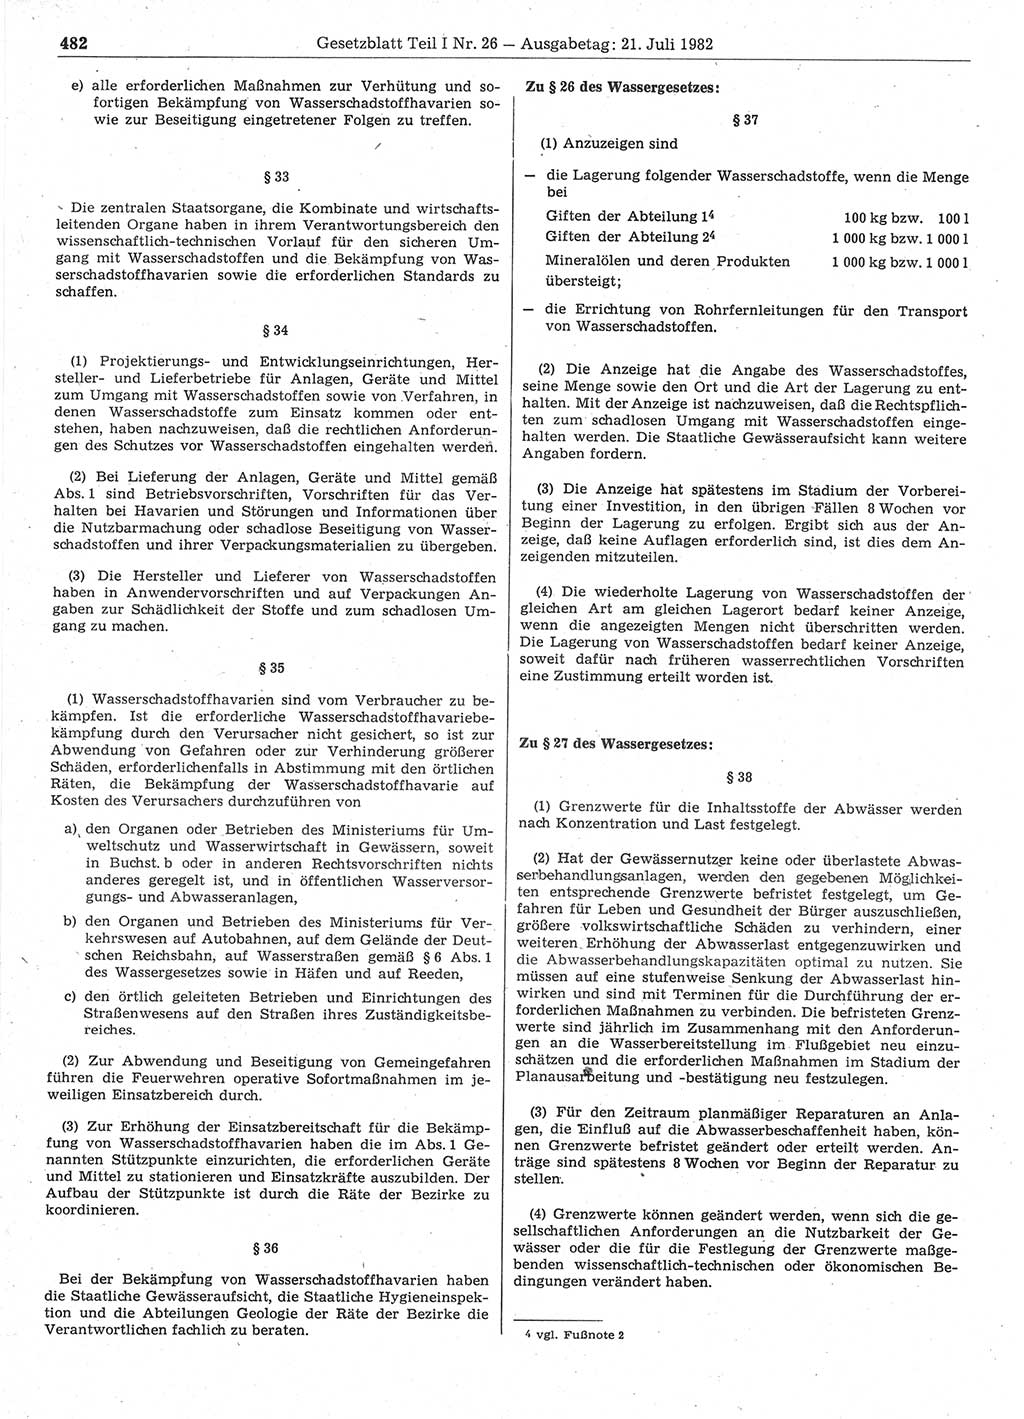 Gesetzblatt (GBl.) der Deutschen Demokratischen Republik (DDR) Teil Ⅰ 1982, Seite 482 (GBl. DDR Ⅰ 1982, S. 482)